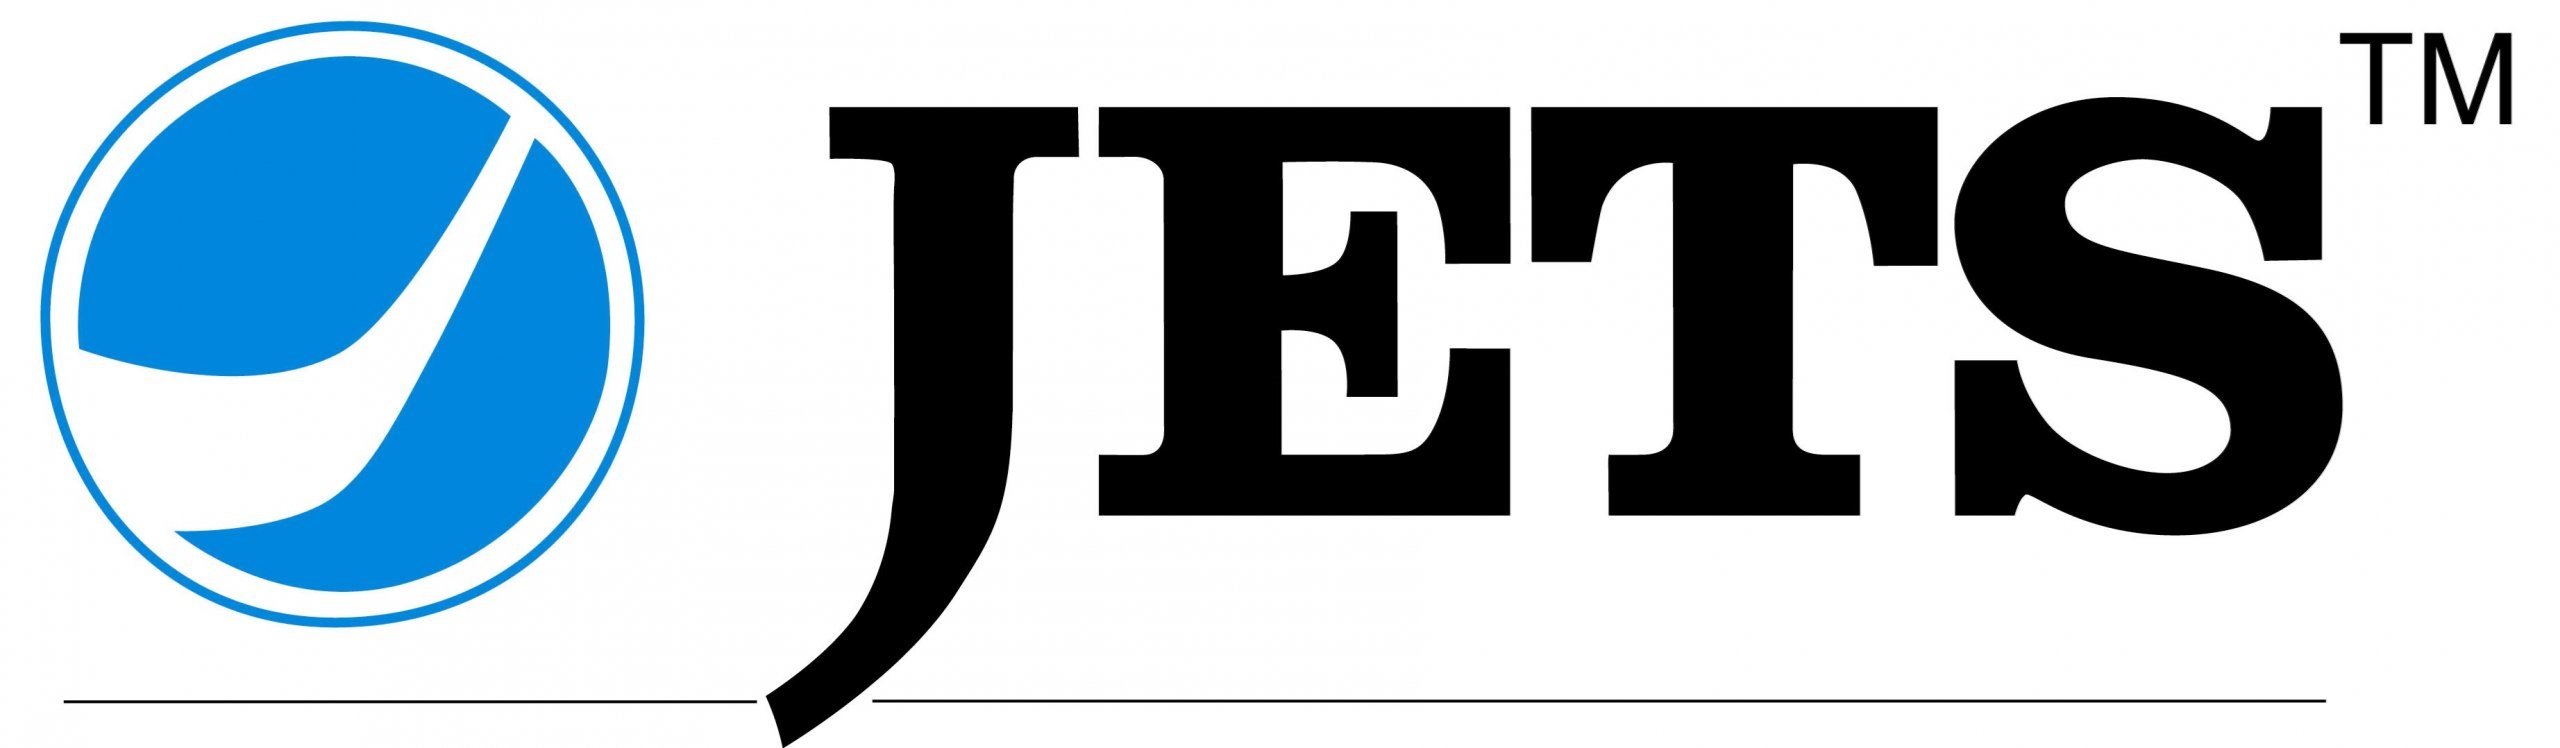 Jets Vacuum AS logo.jpg